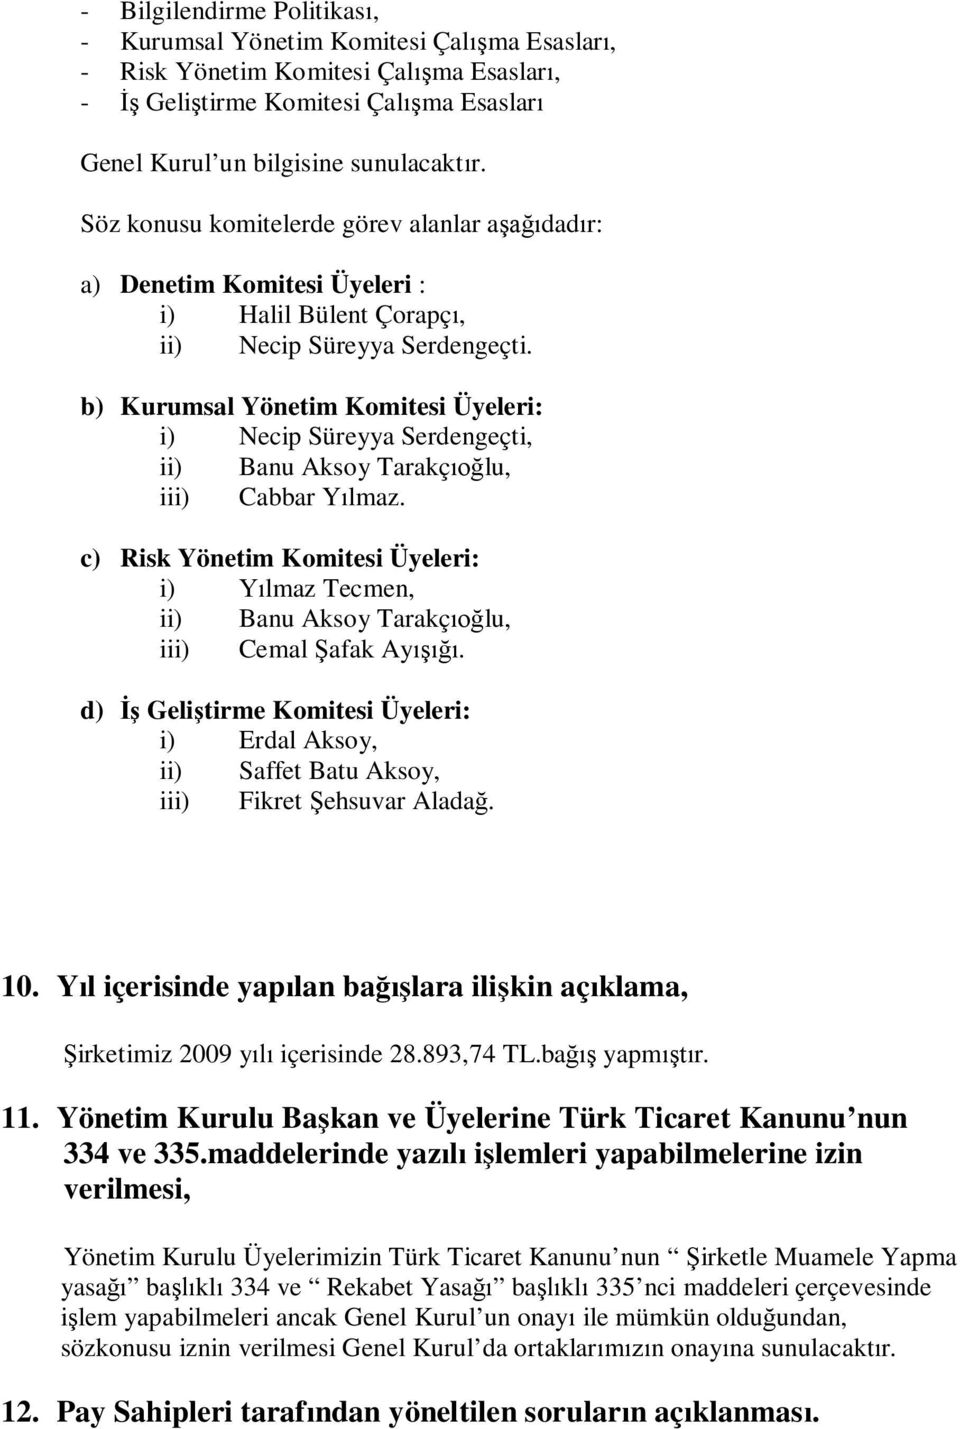 b) Kurumsal Yönetim Komitesi Üyeleri: i) Necip Süreyya Serdengeçti, ii) Banu Aksoy Tarakçıoğlu, iii) Cabbar Yılmaz.